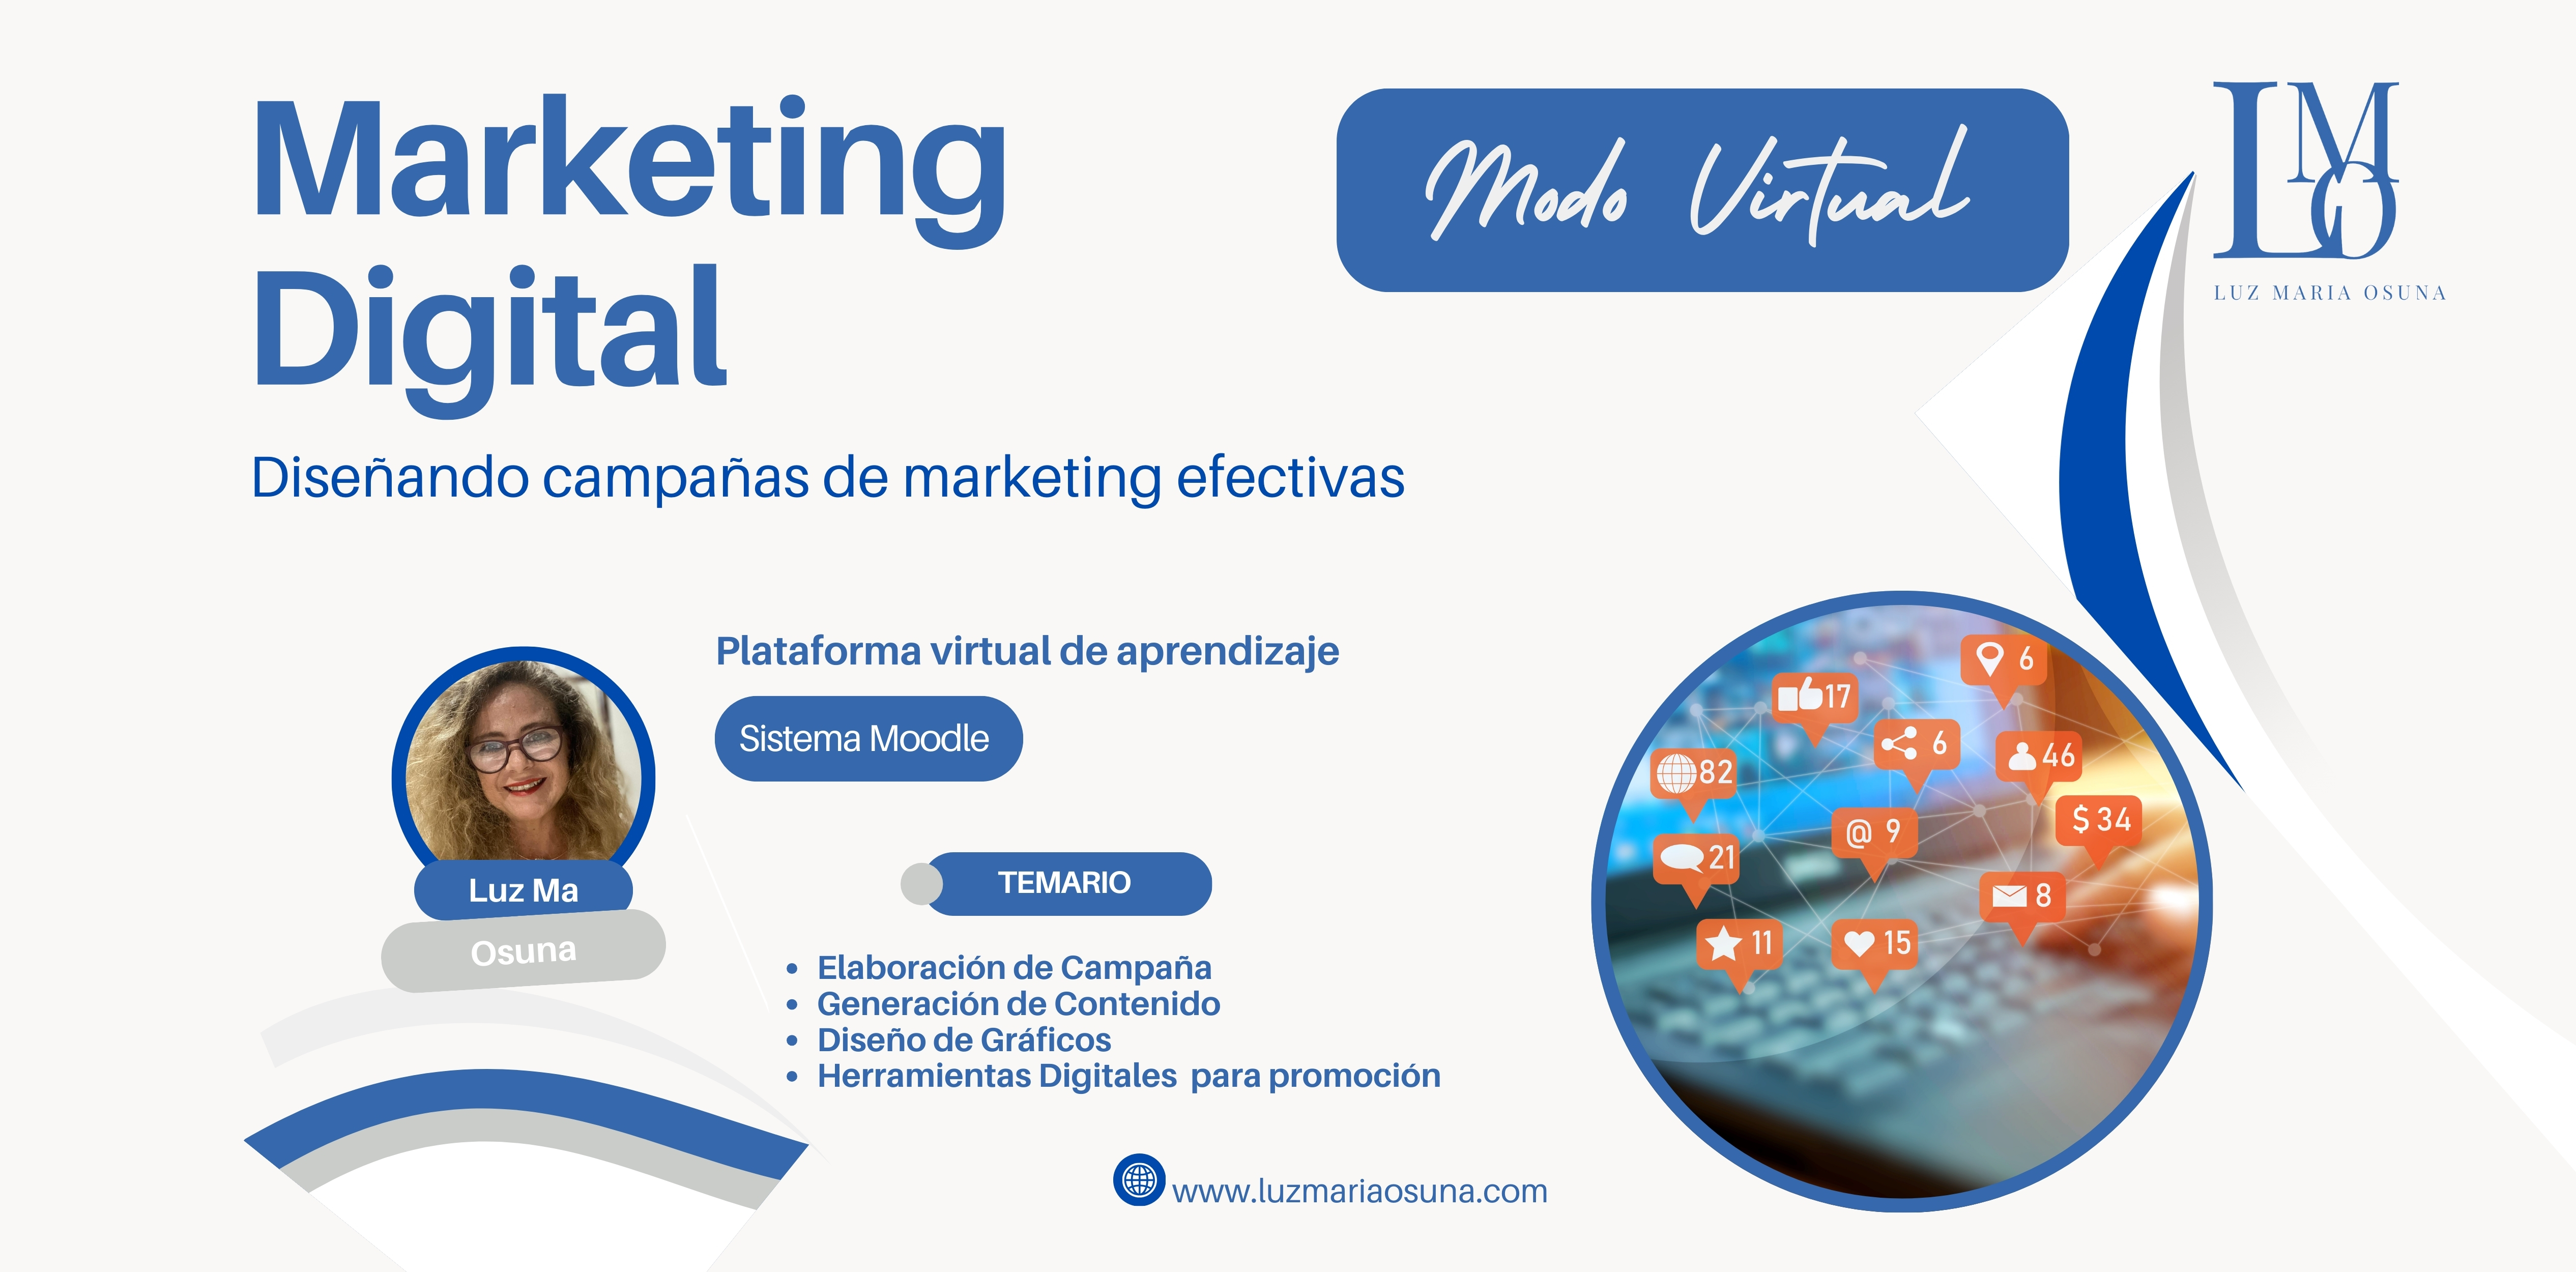 Marketing Digital: Diseñando campañas de marketing efectivas